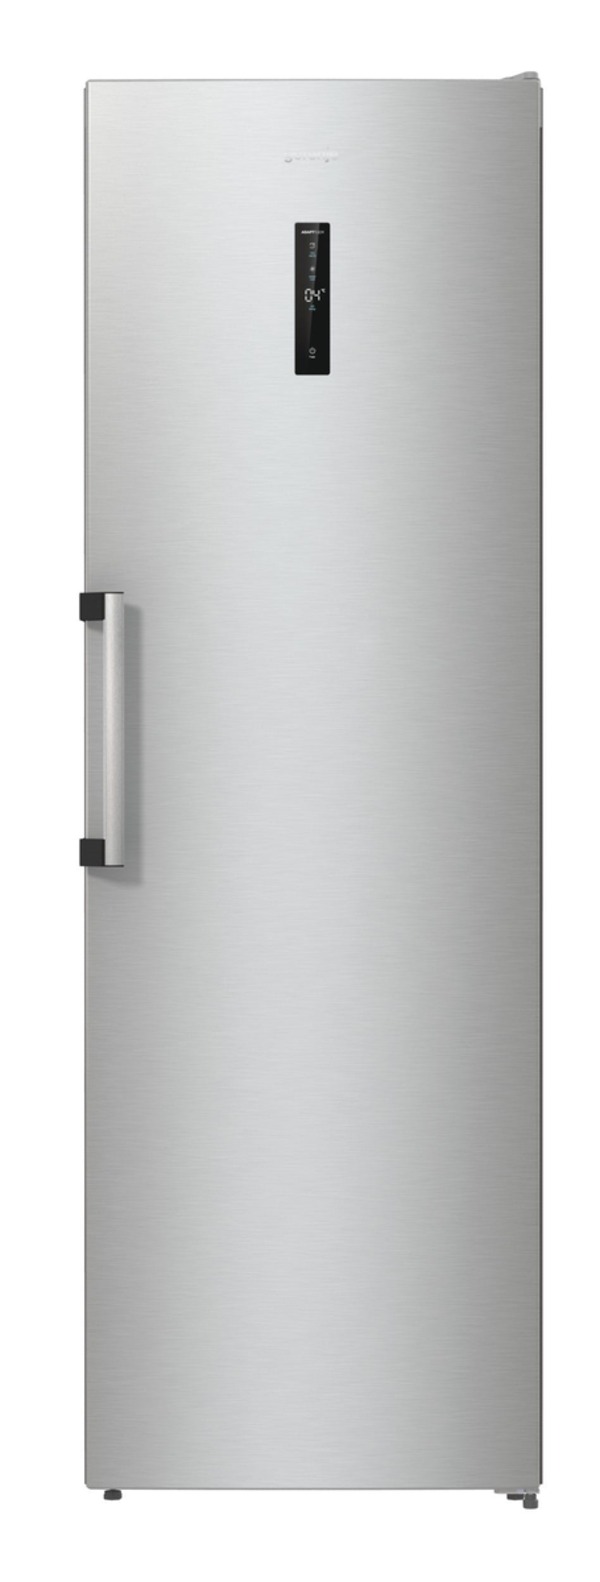 Bild 1 von R619DAXL6 - Freistehender Kühlschrank - 398 Liter Gesamtvolumen - EEK: D - LED-Display - EcoMode